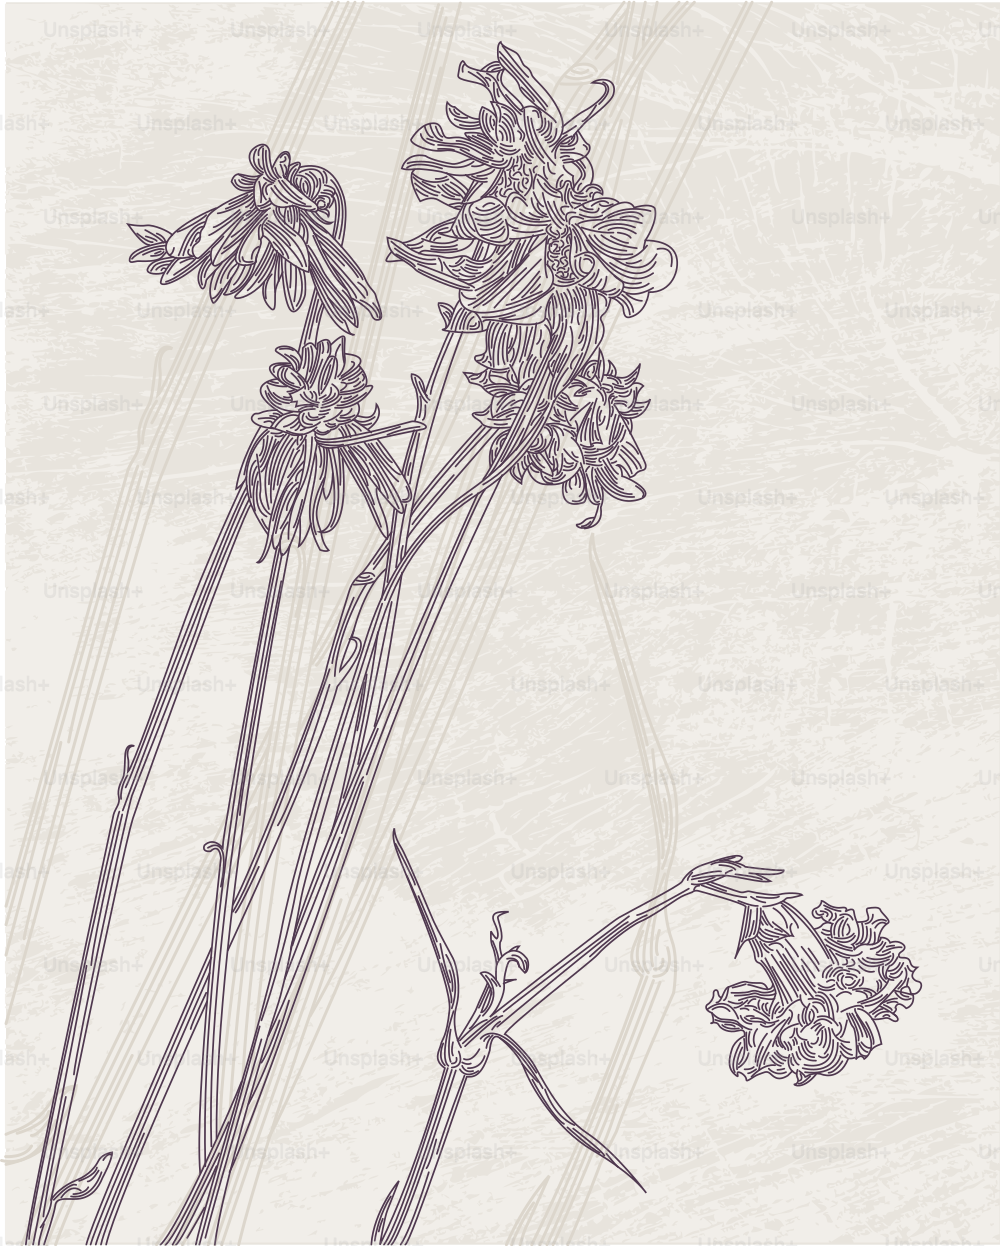 Un dibujo de estilo antiguo de unas flores secas y muertas.